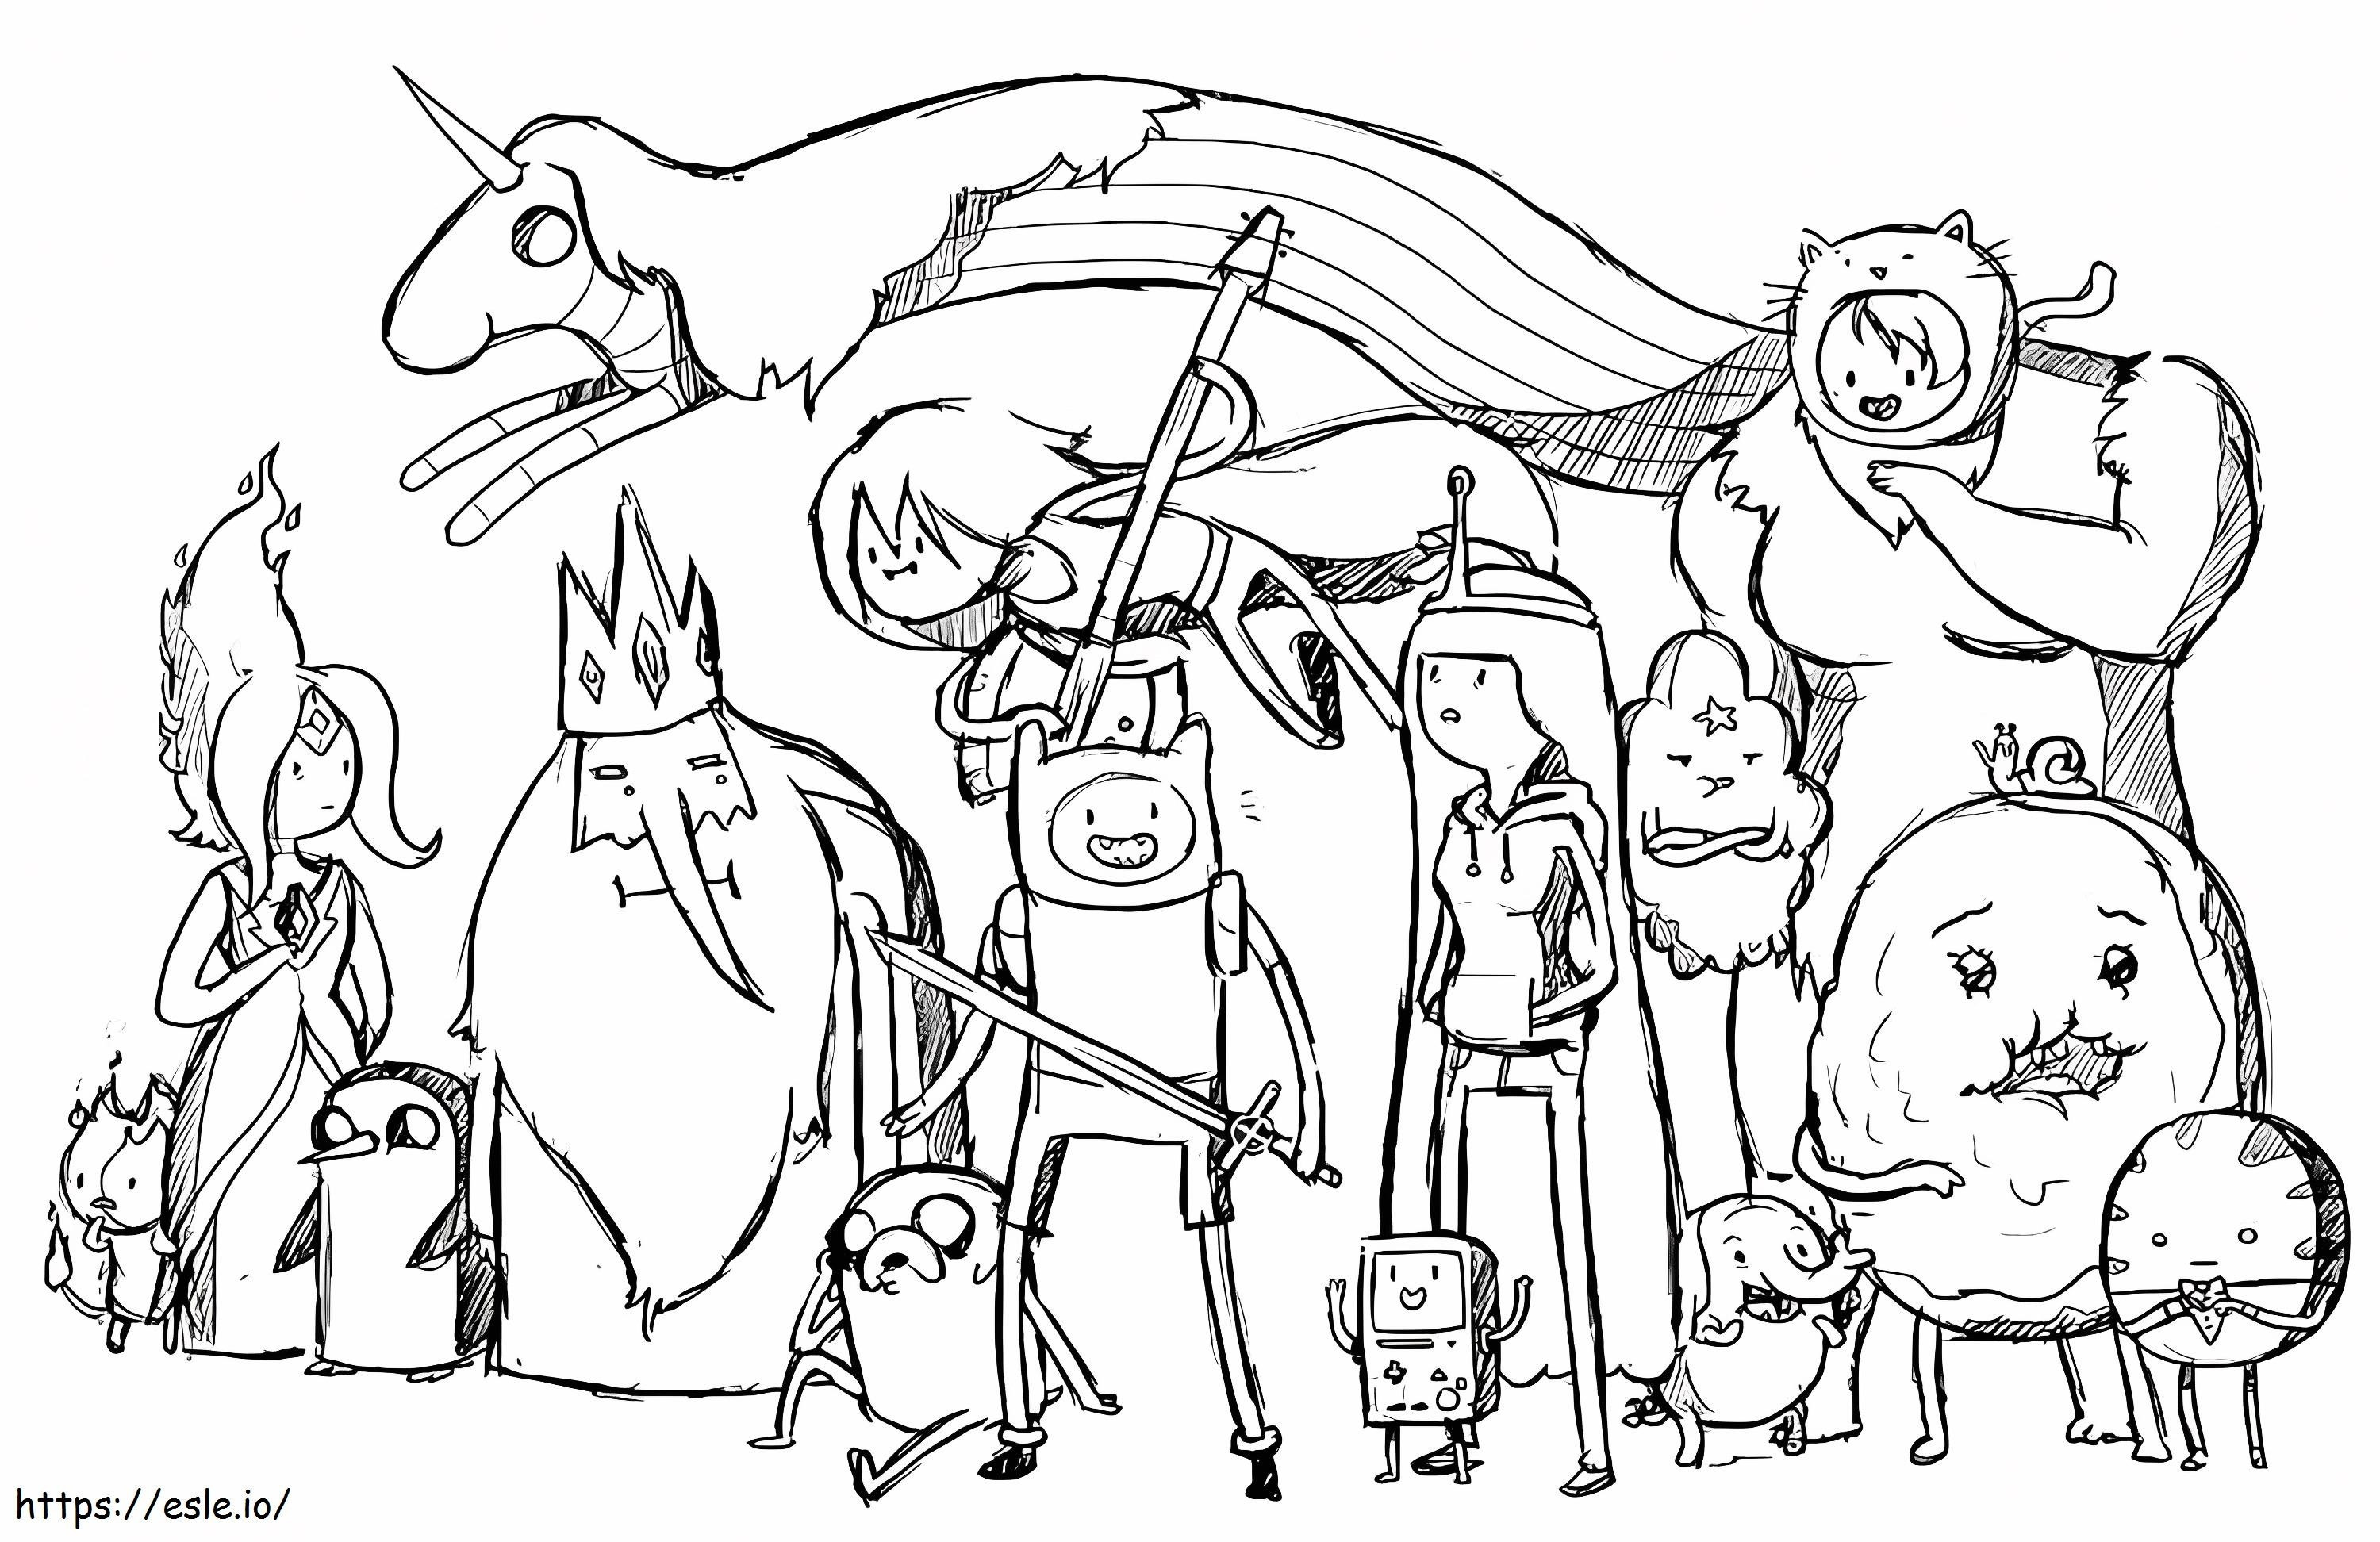 Disegnare i personaggi di Adventure Time da colorare